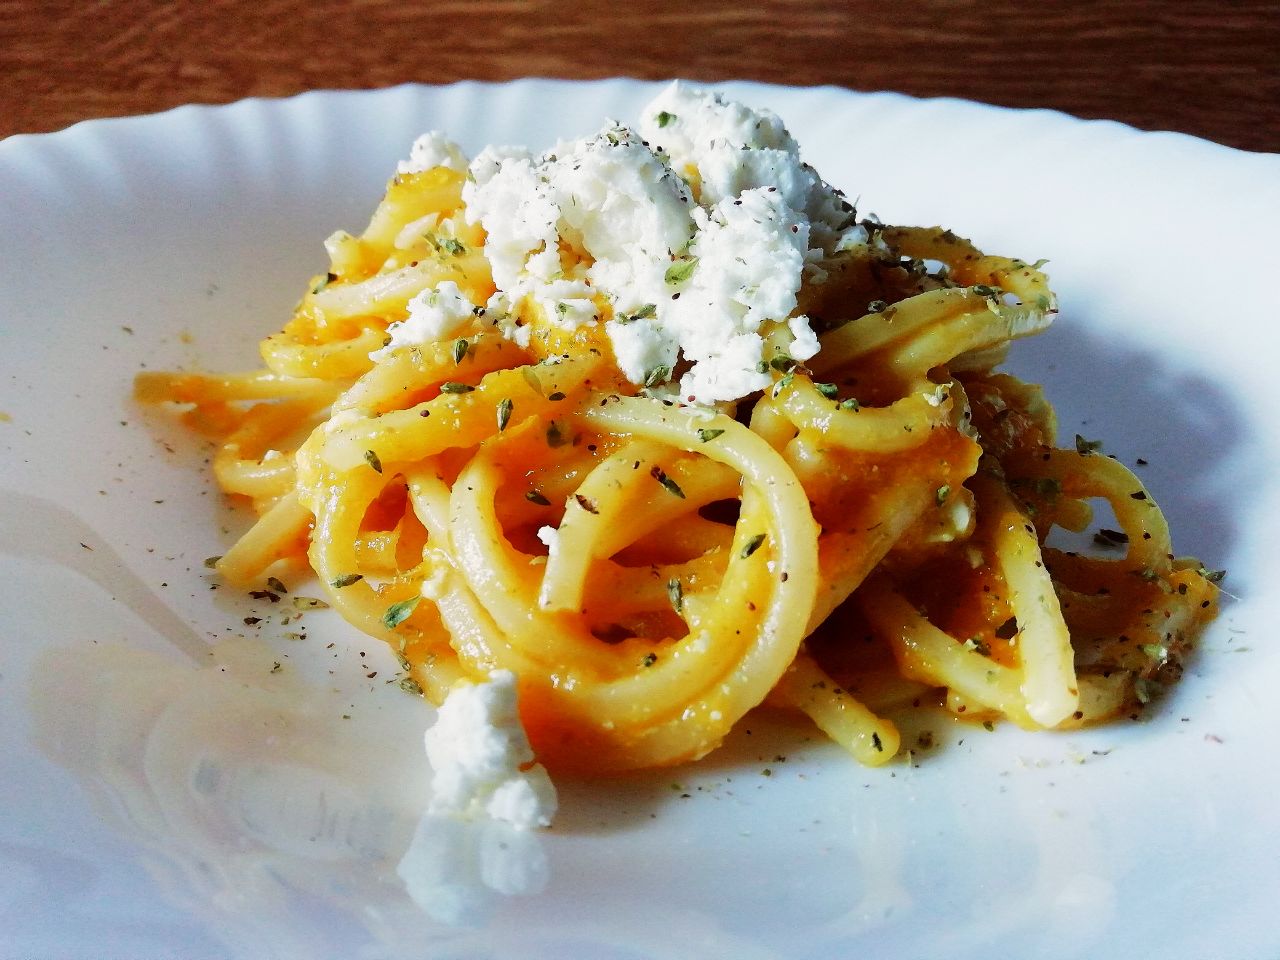 Primi piatti semplici ed economici senza burro e senza uova: spaghetti di Gragnano alla chitarra con crema di zucca e acciughe e feta greca!